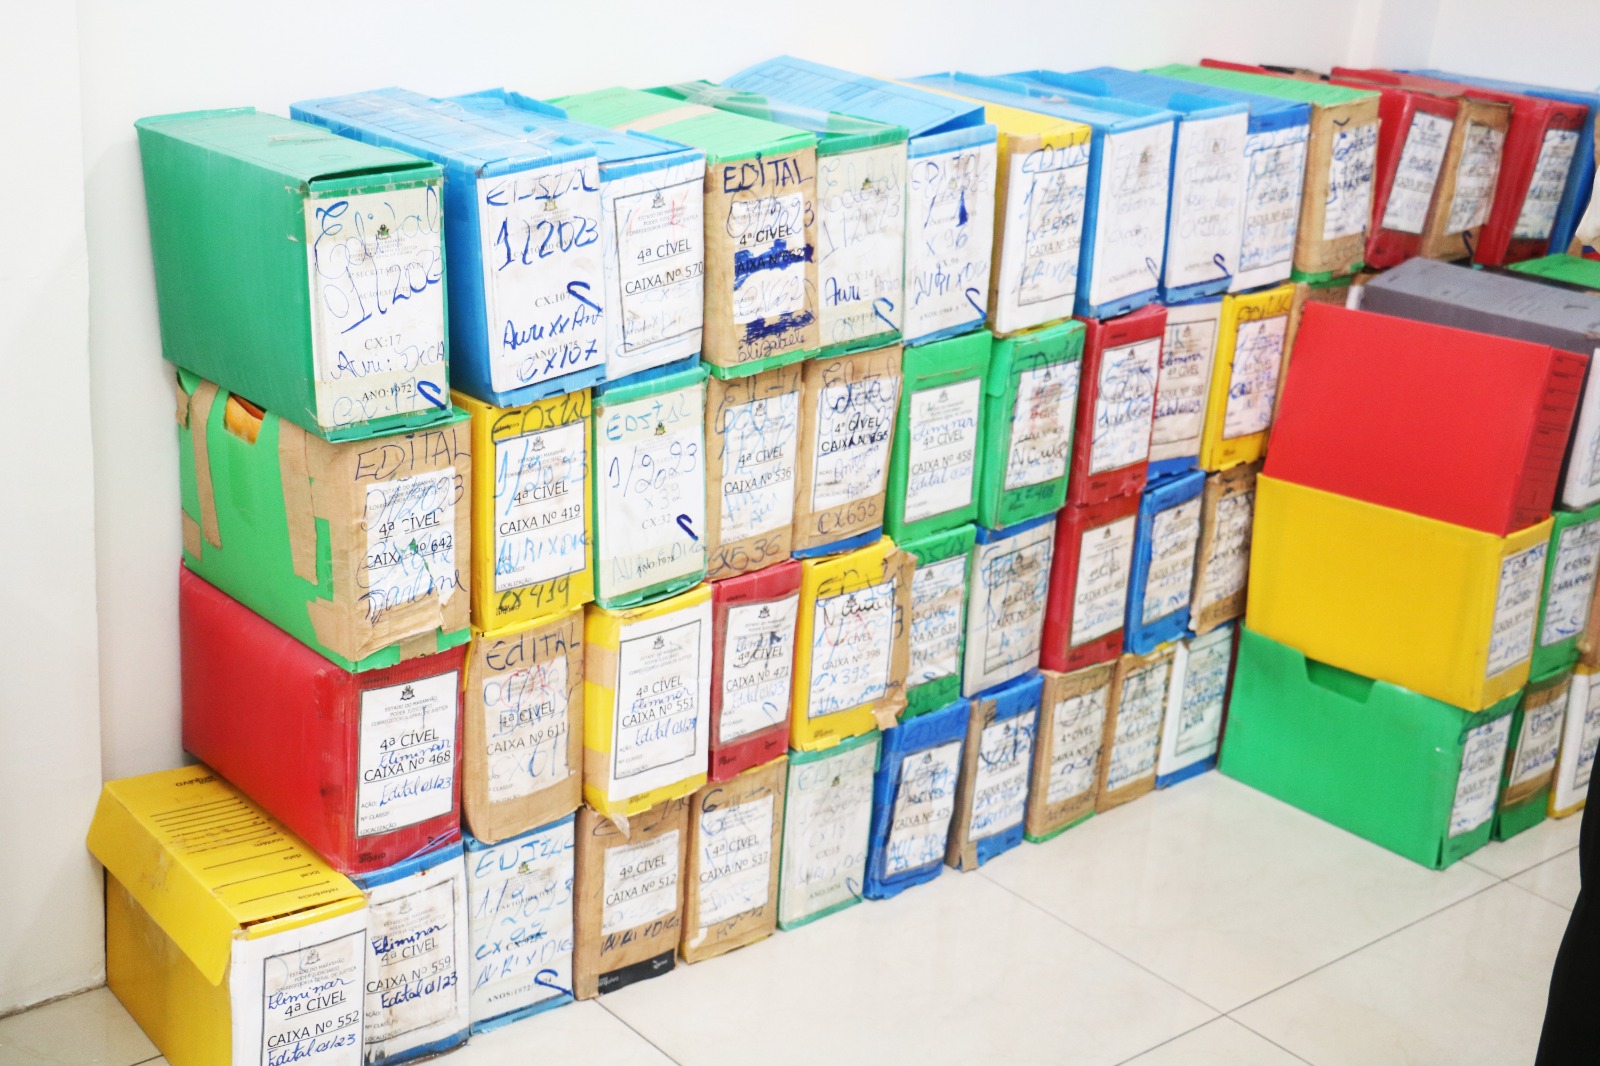 quatro pilhas de caixas de plástico coloridas contendo processos judiciais encostadas em parede branca e sobre piso branco